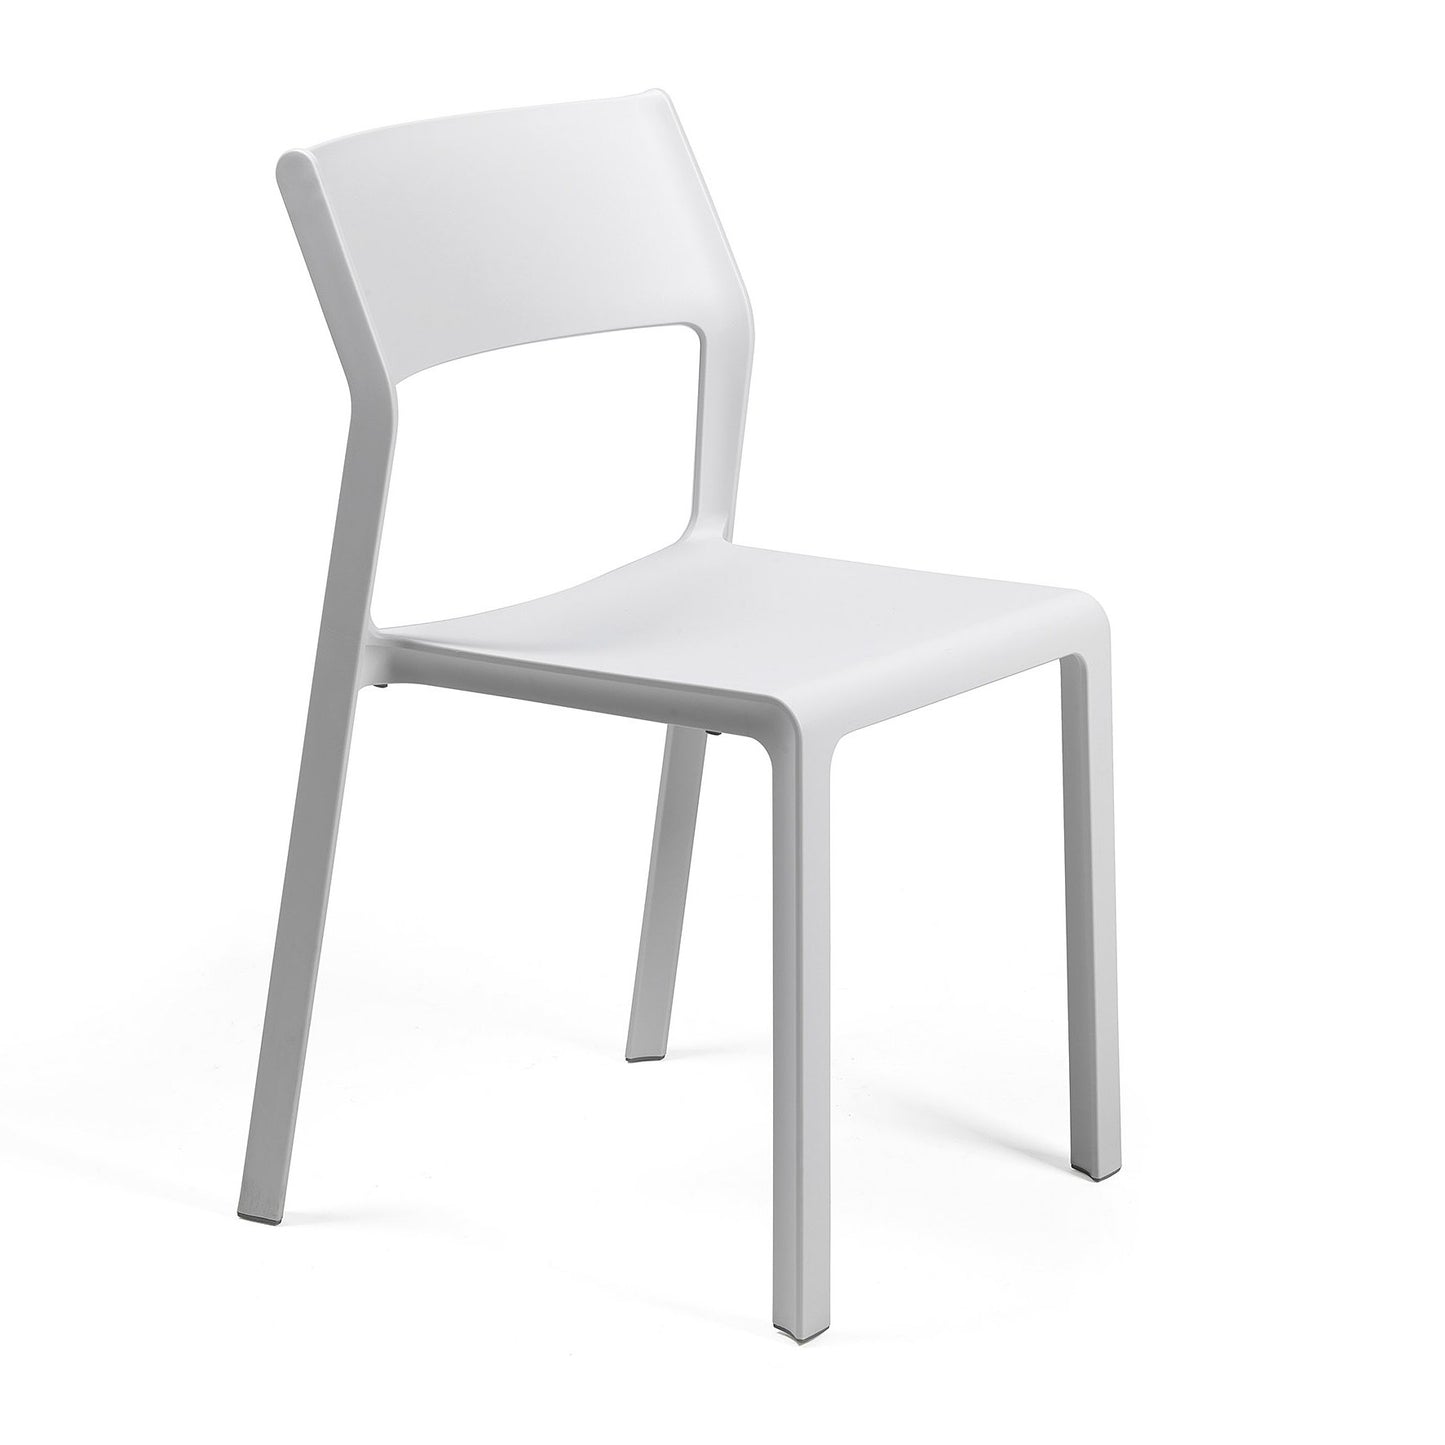 Trill bistro chair in white